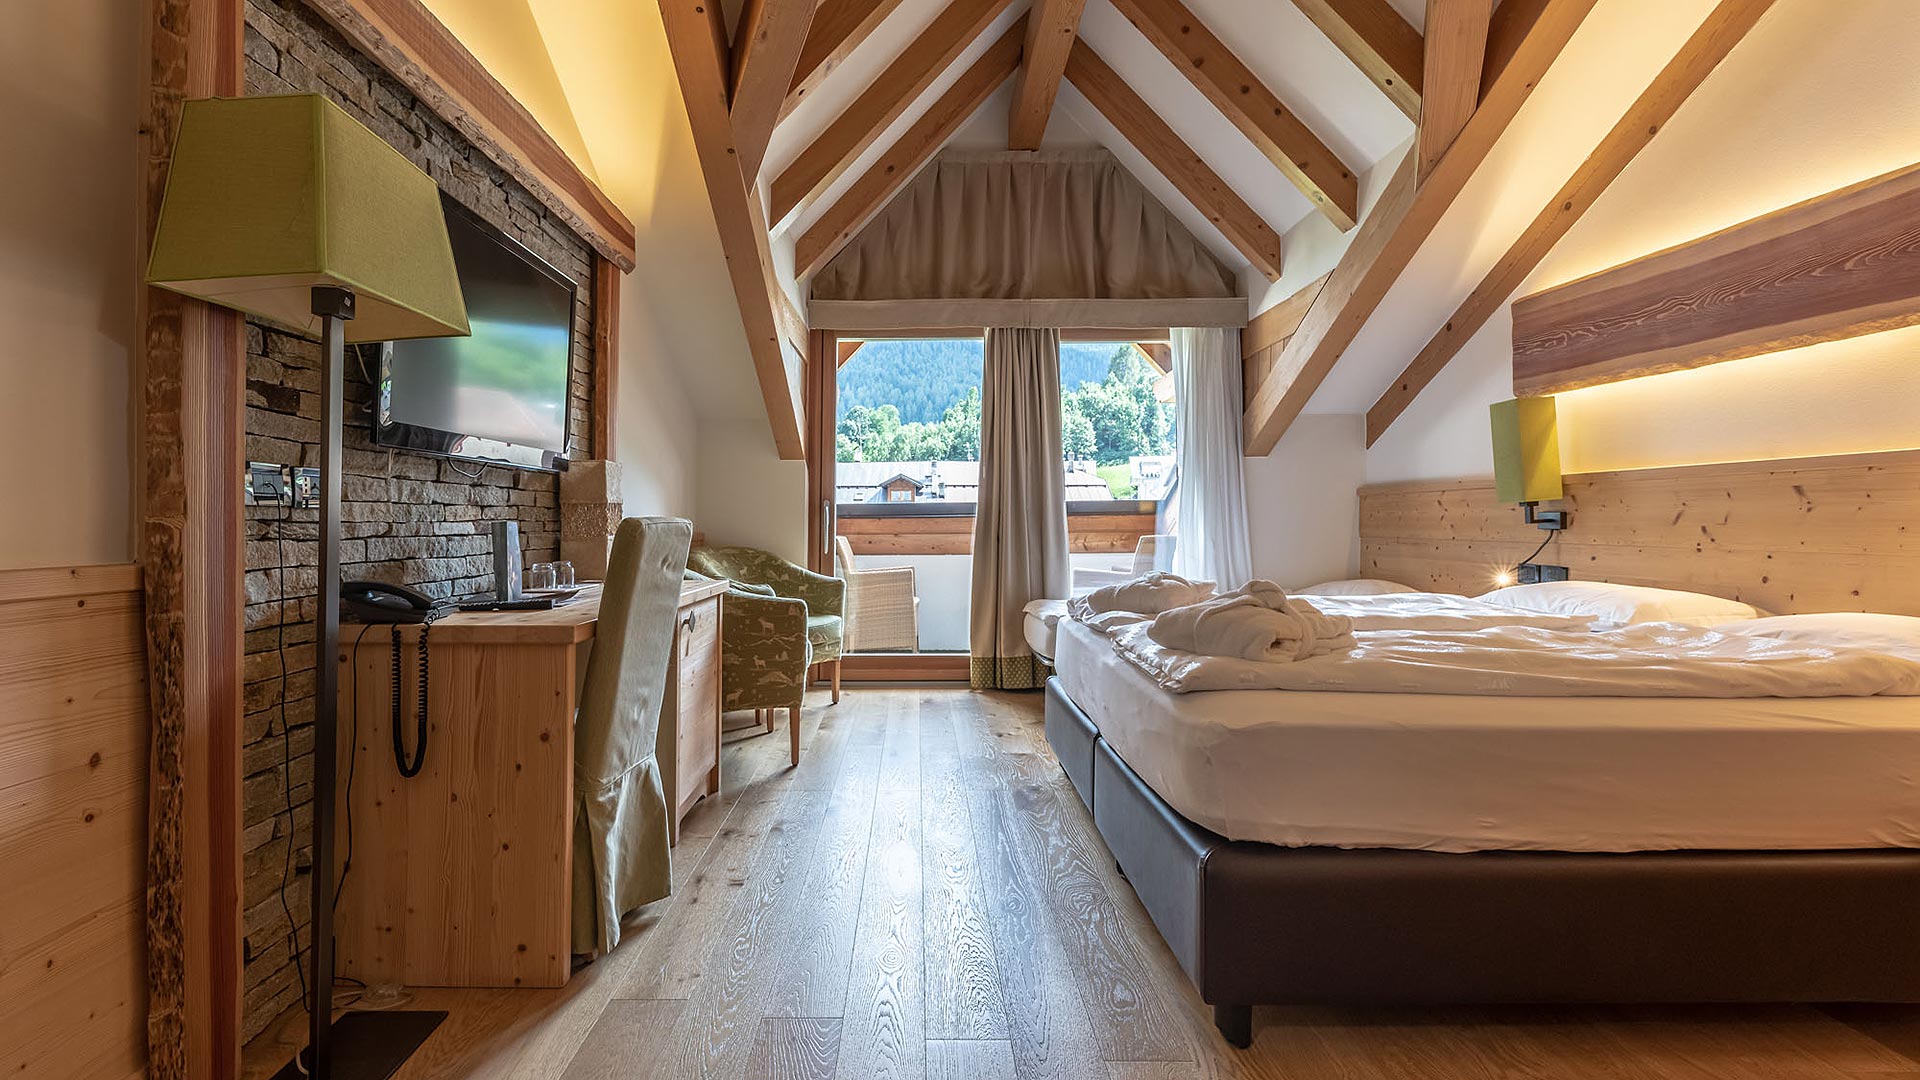 Das AlpHoliday ist eine Unterkunft im Val di Sole, wo Sie sich in geräumigen, hellen und komfortablen Zimmern erholen können.